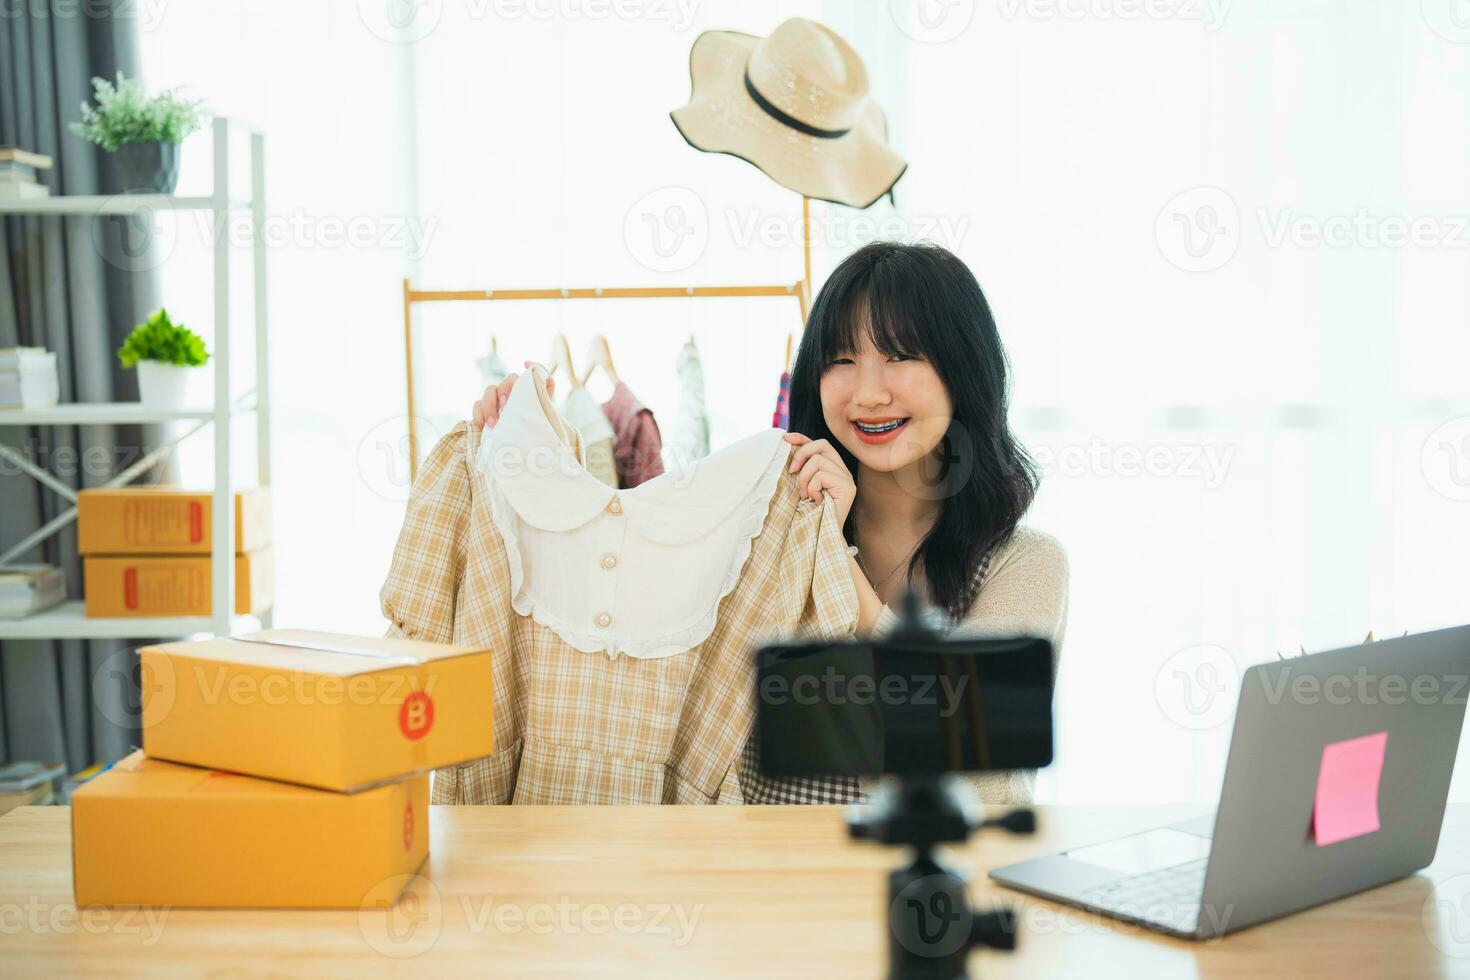 asiatisk kvinna ångande sälja trasa skjorta produkt uppkopplad leva på Hem. ung kvinna använder sig av mobil telefon video ring upp visar varor till kund och detalj. handla uppkopplad e-handel uppköp och försäljning begrepp. foto